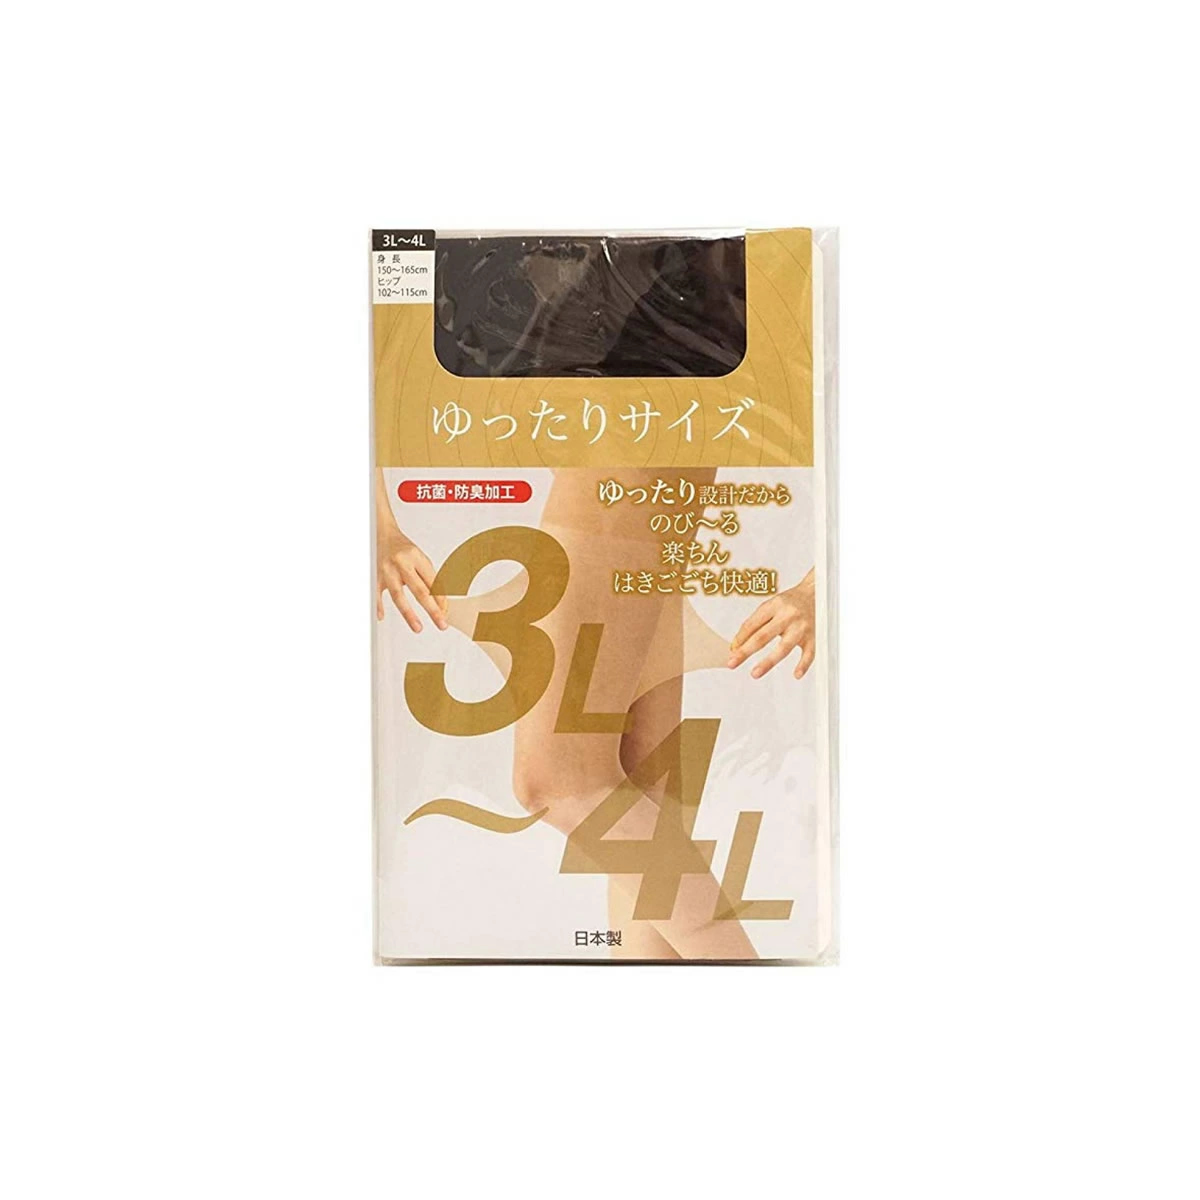 ストッキング stocking 大きいサイズ3L〜4L抗菌 防臭 素足 透明感 パンスト 日本製 国...